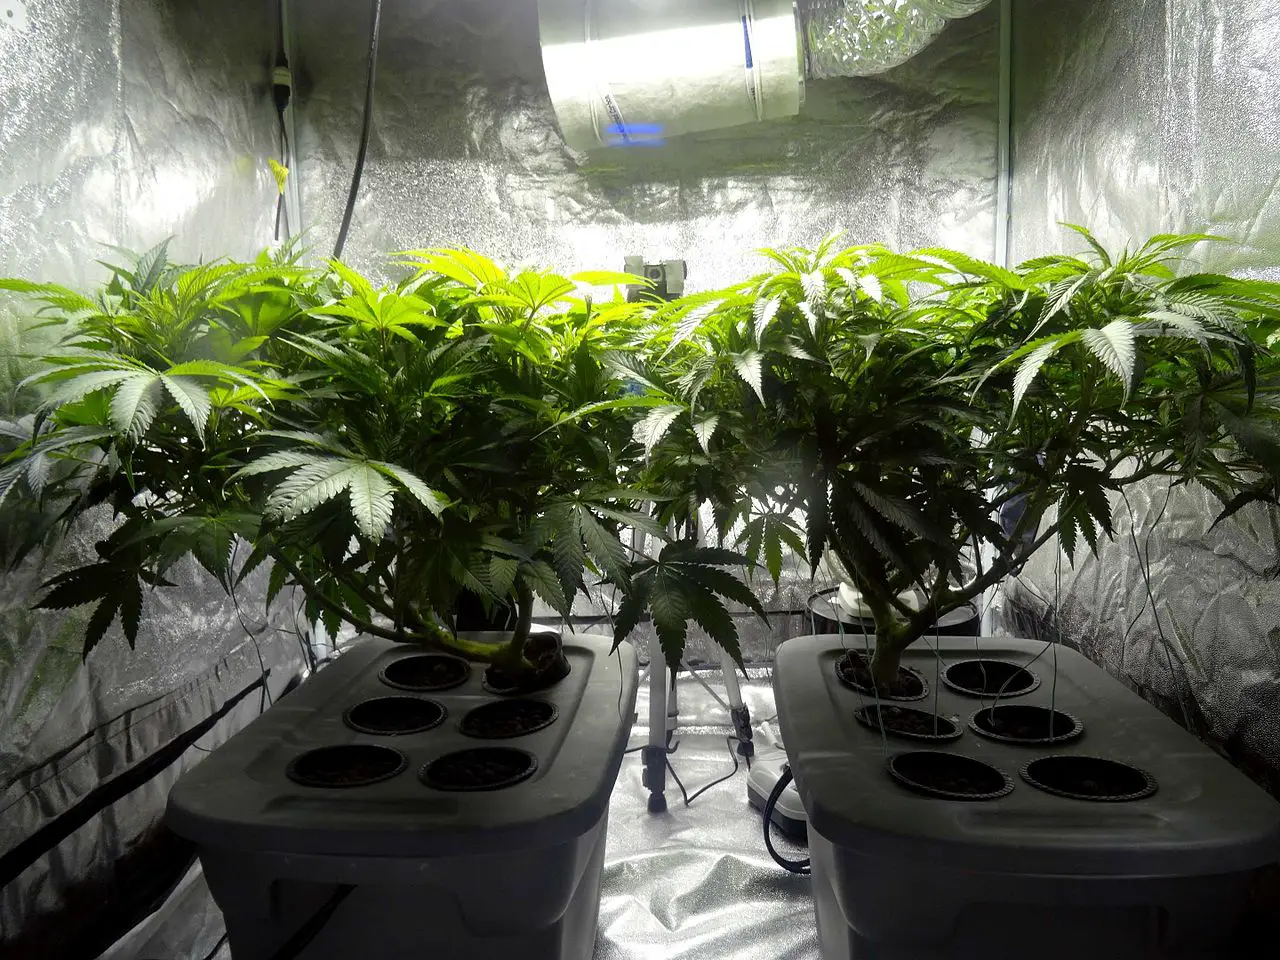 Top 7 Indoor Grow Tents for Cannabis in 2020